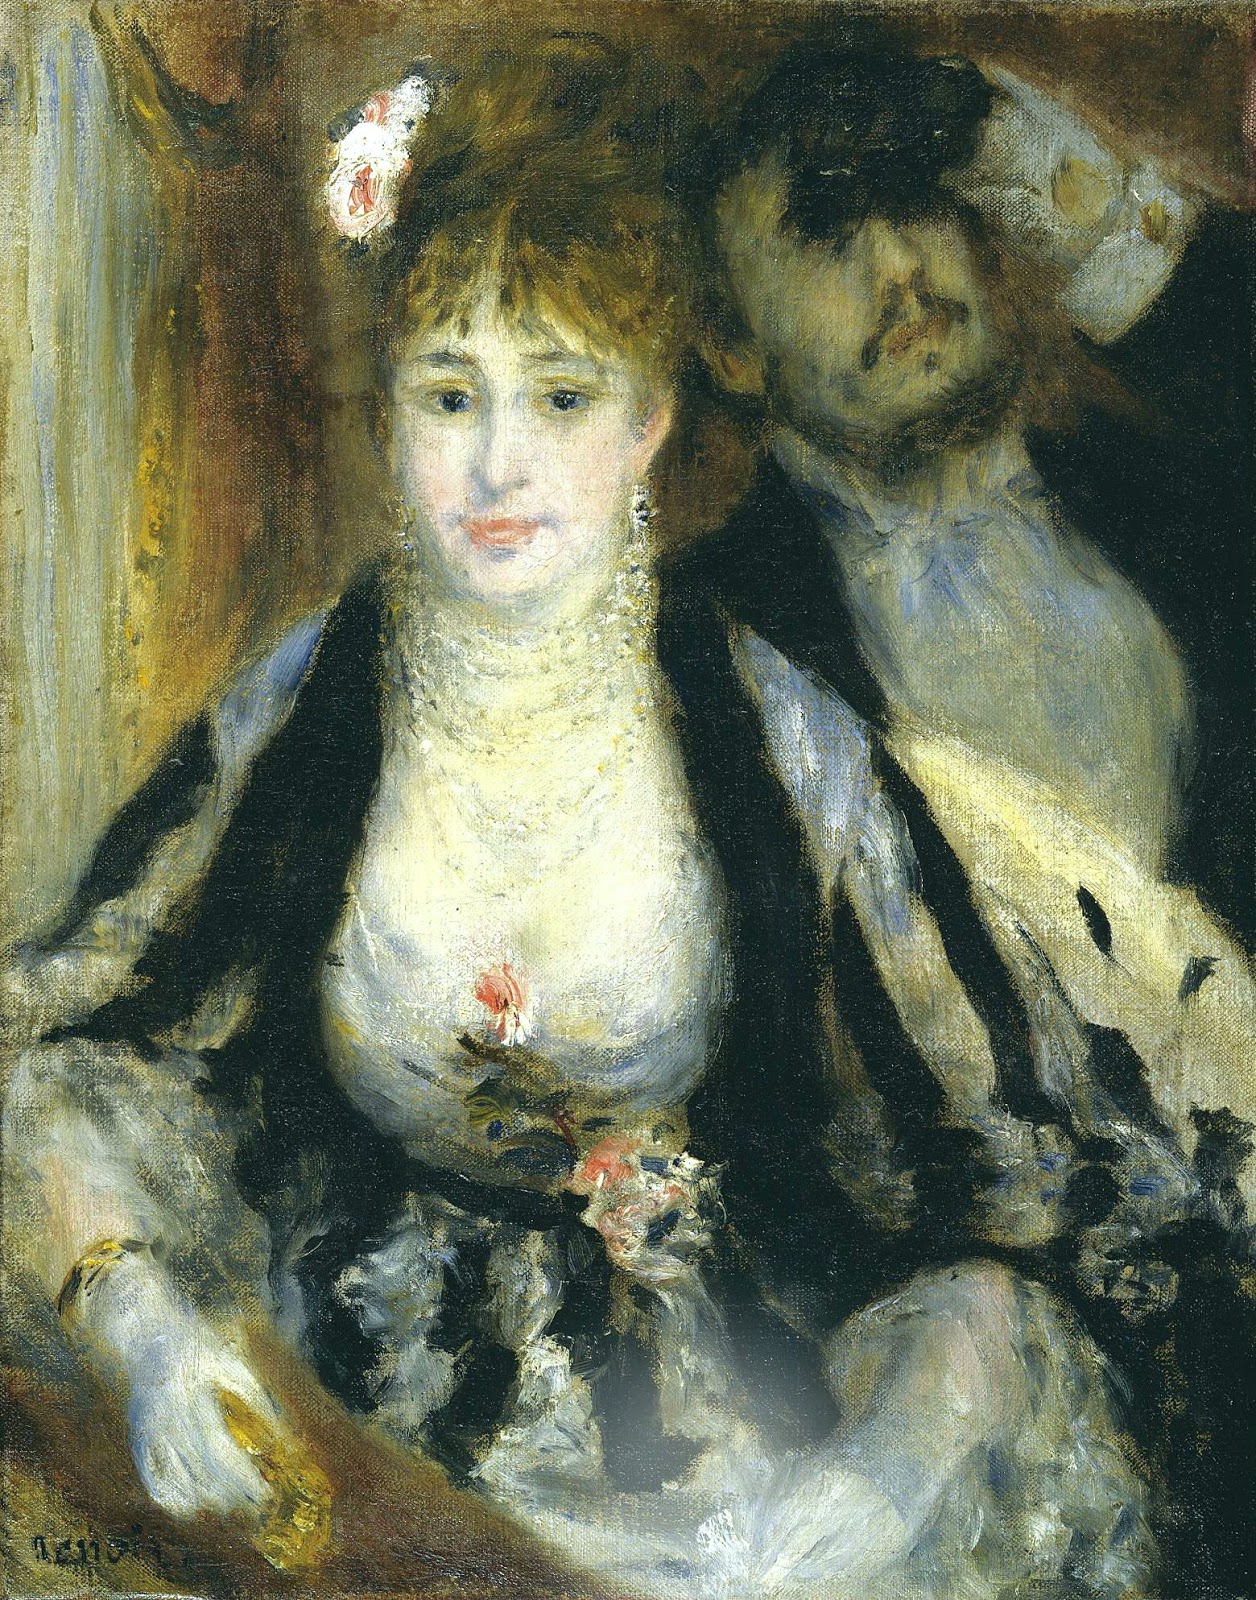 Pierre+Auguste+Renoir-1841-1-19 (881).jpg